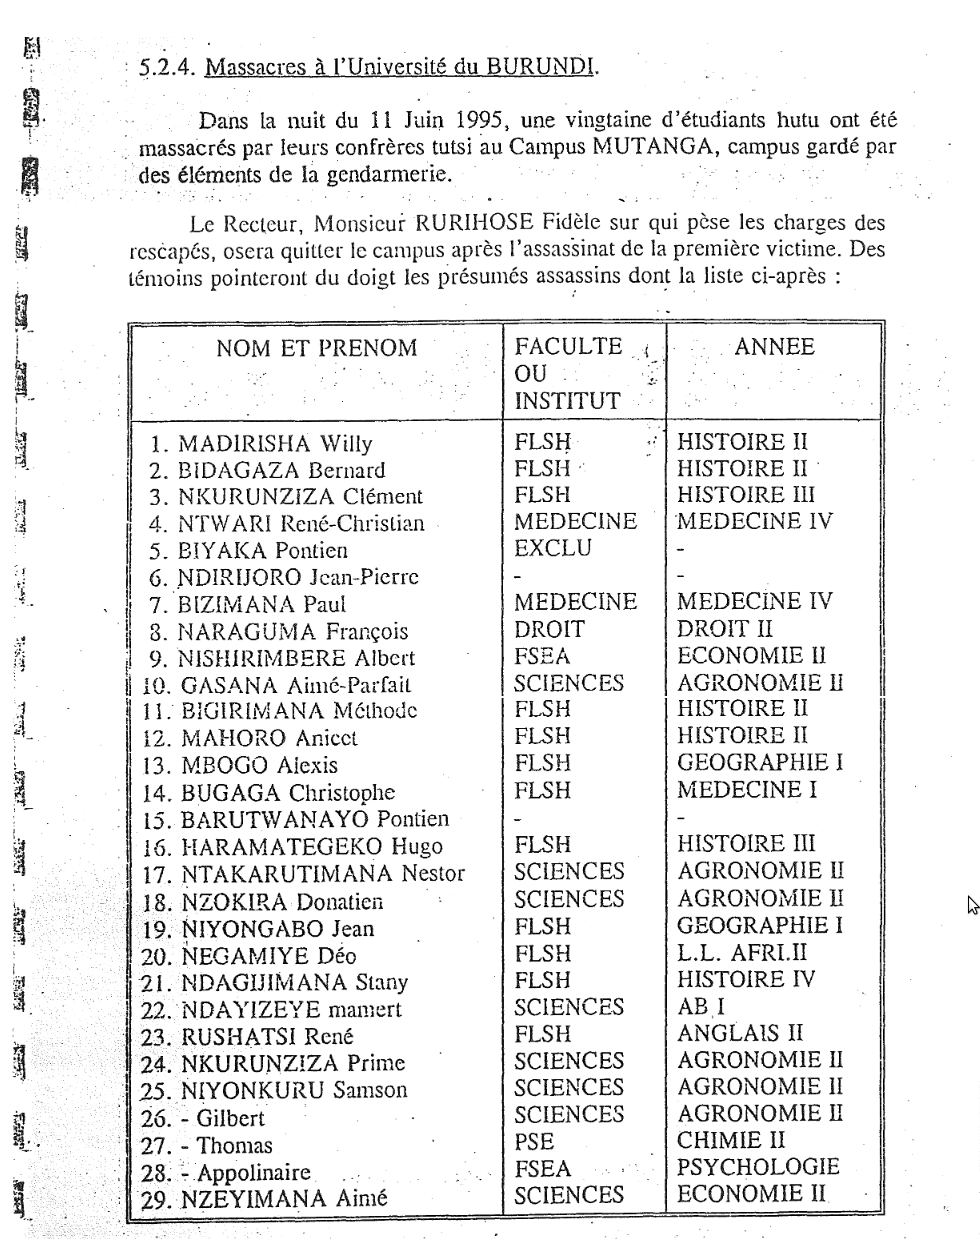 Source : Mémorandum publié en décembre 1995 sur la situation de la magistrature burundaise face à la crise - FRODEBU